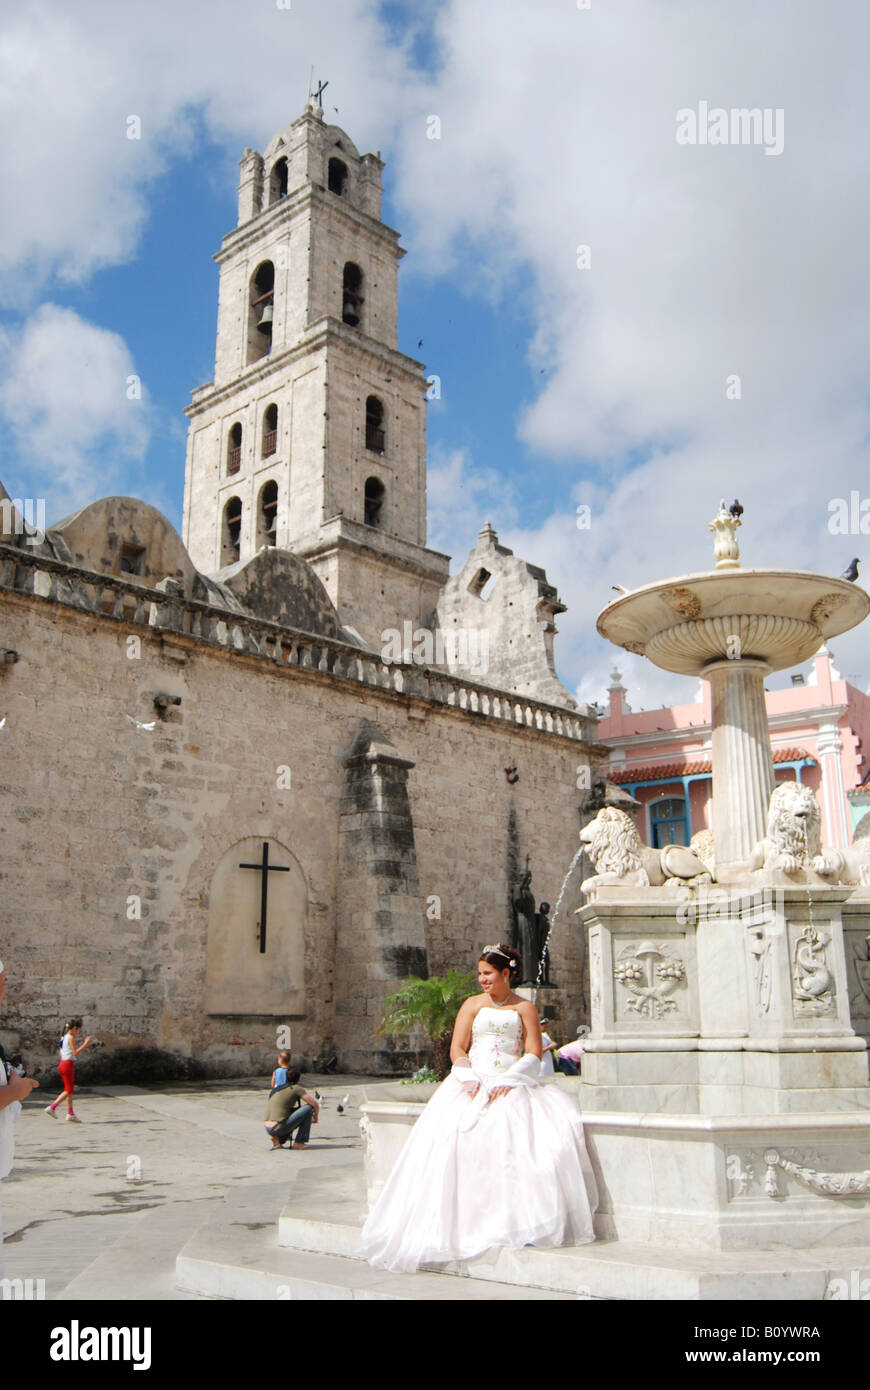 A bride poses by a fountain in the Plaza de San Francisco de Asis in Havana Vieja Stock Photo